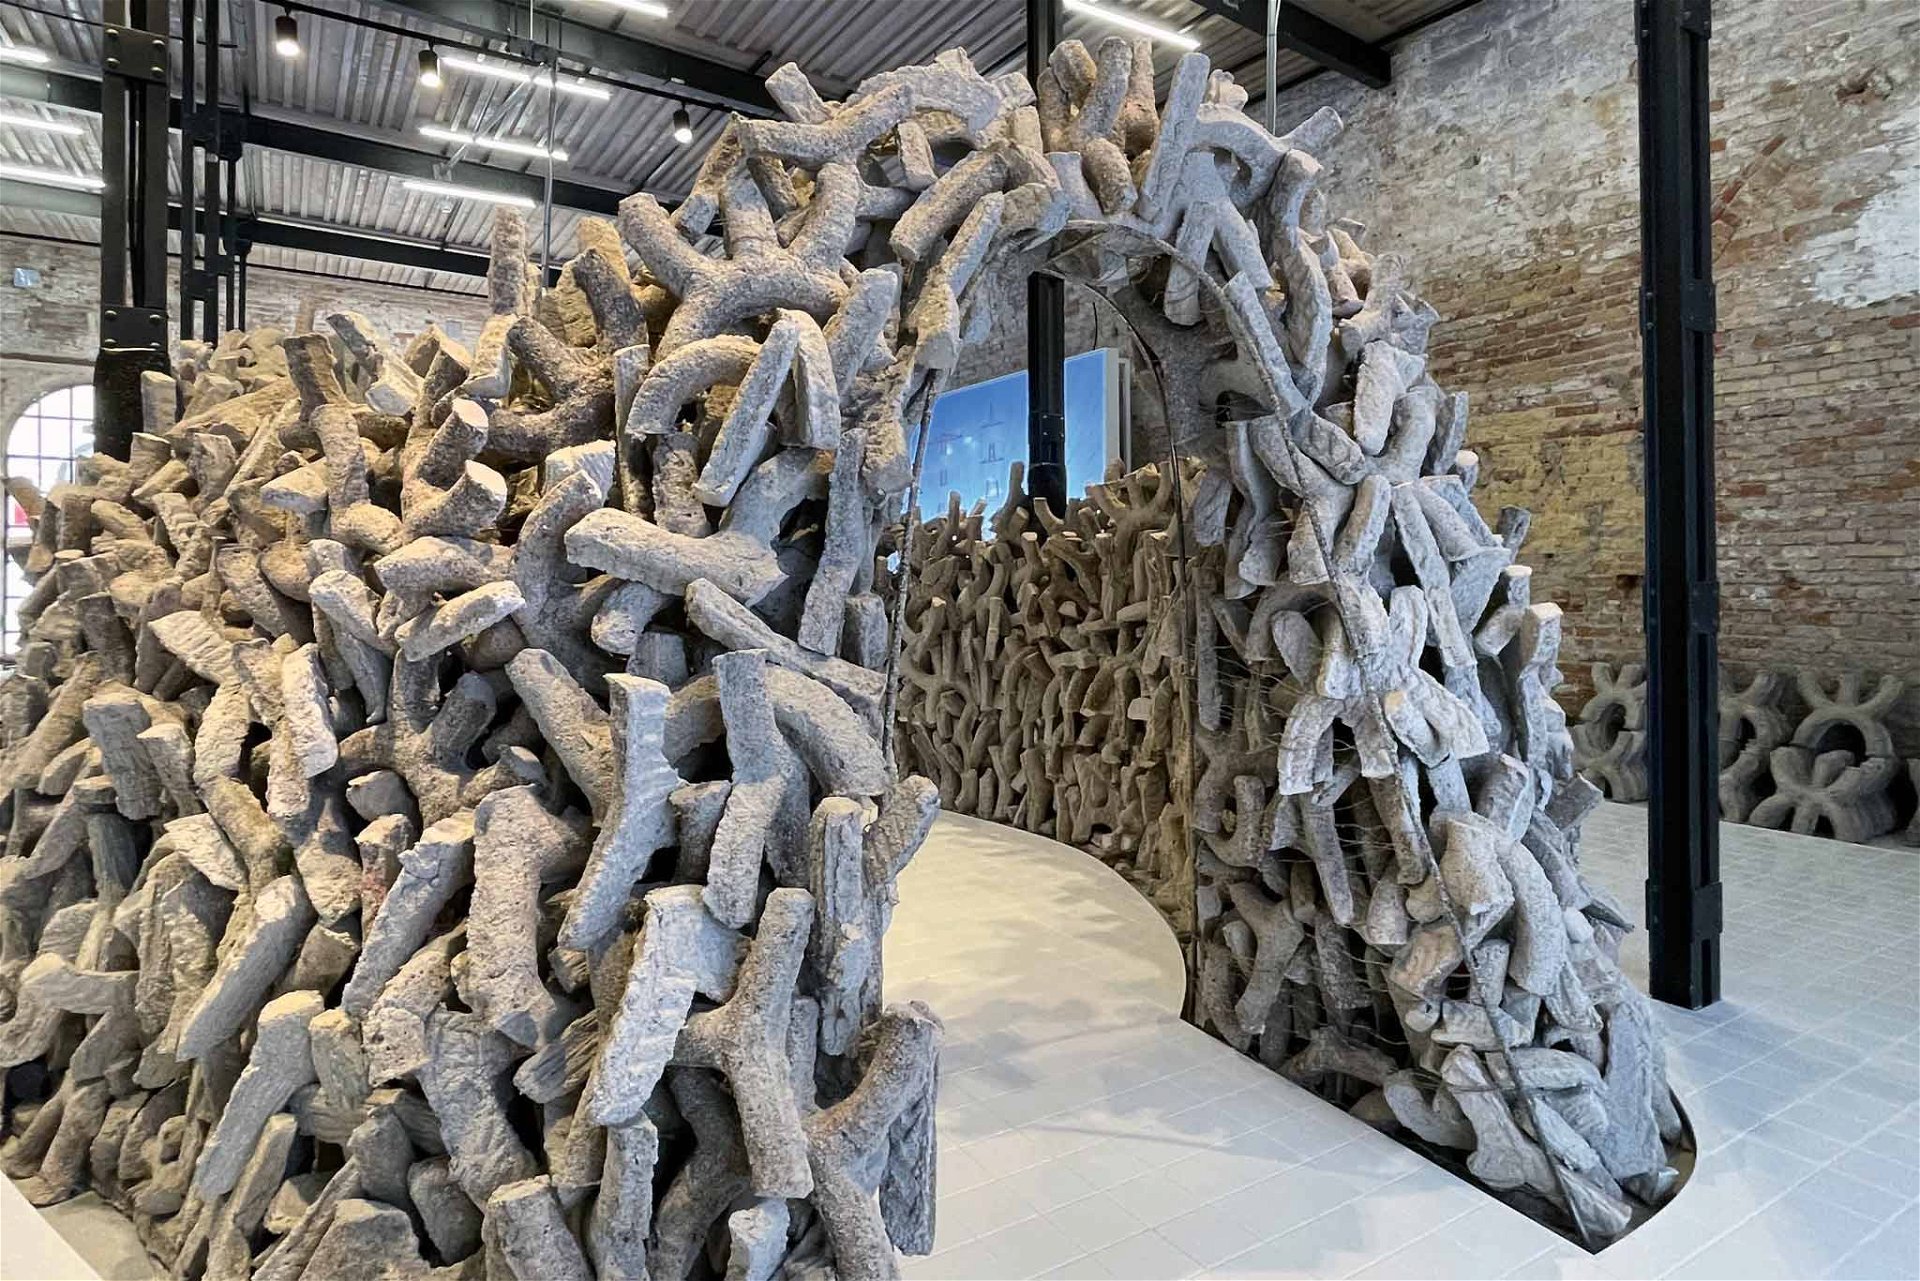 Vereinigte Arabische Emirate: Der Architekt und Kurator Wael Al Awar hat einen neuen Beton mit Magnesiumoxid entwickelt und baut daraus einen kleinen, igluartigen Pavillon. Das Projekt »Wetland« ist eines der technischen Highlights dieser Biennale. nationalpavilionuae.org